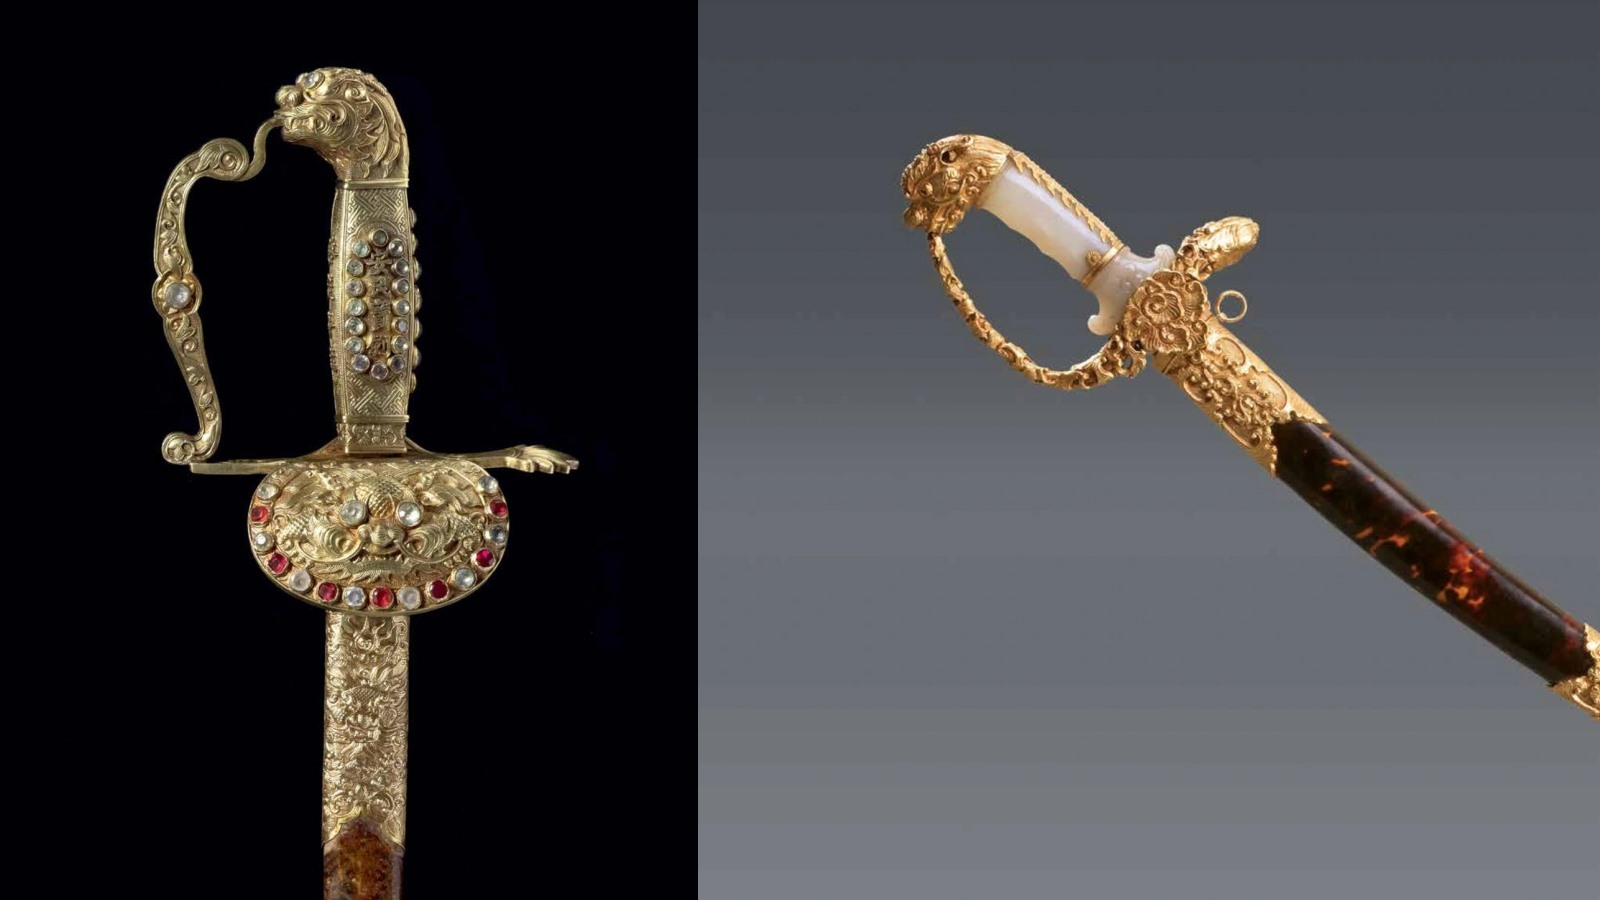 Thanh kiếm An dân bảo kiếm (trái) là bảo vật quý, có giá trị mà bảo tàng lịch sử lưu giữ. Ngoài ra, các thanh kiếm khác có chuôi bọc ngọc vàng hoặc chuôi ngà. Ảnh: BT